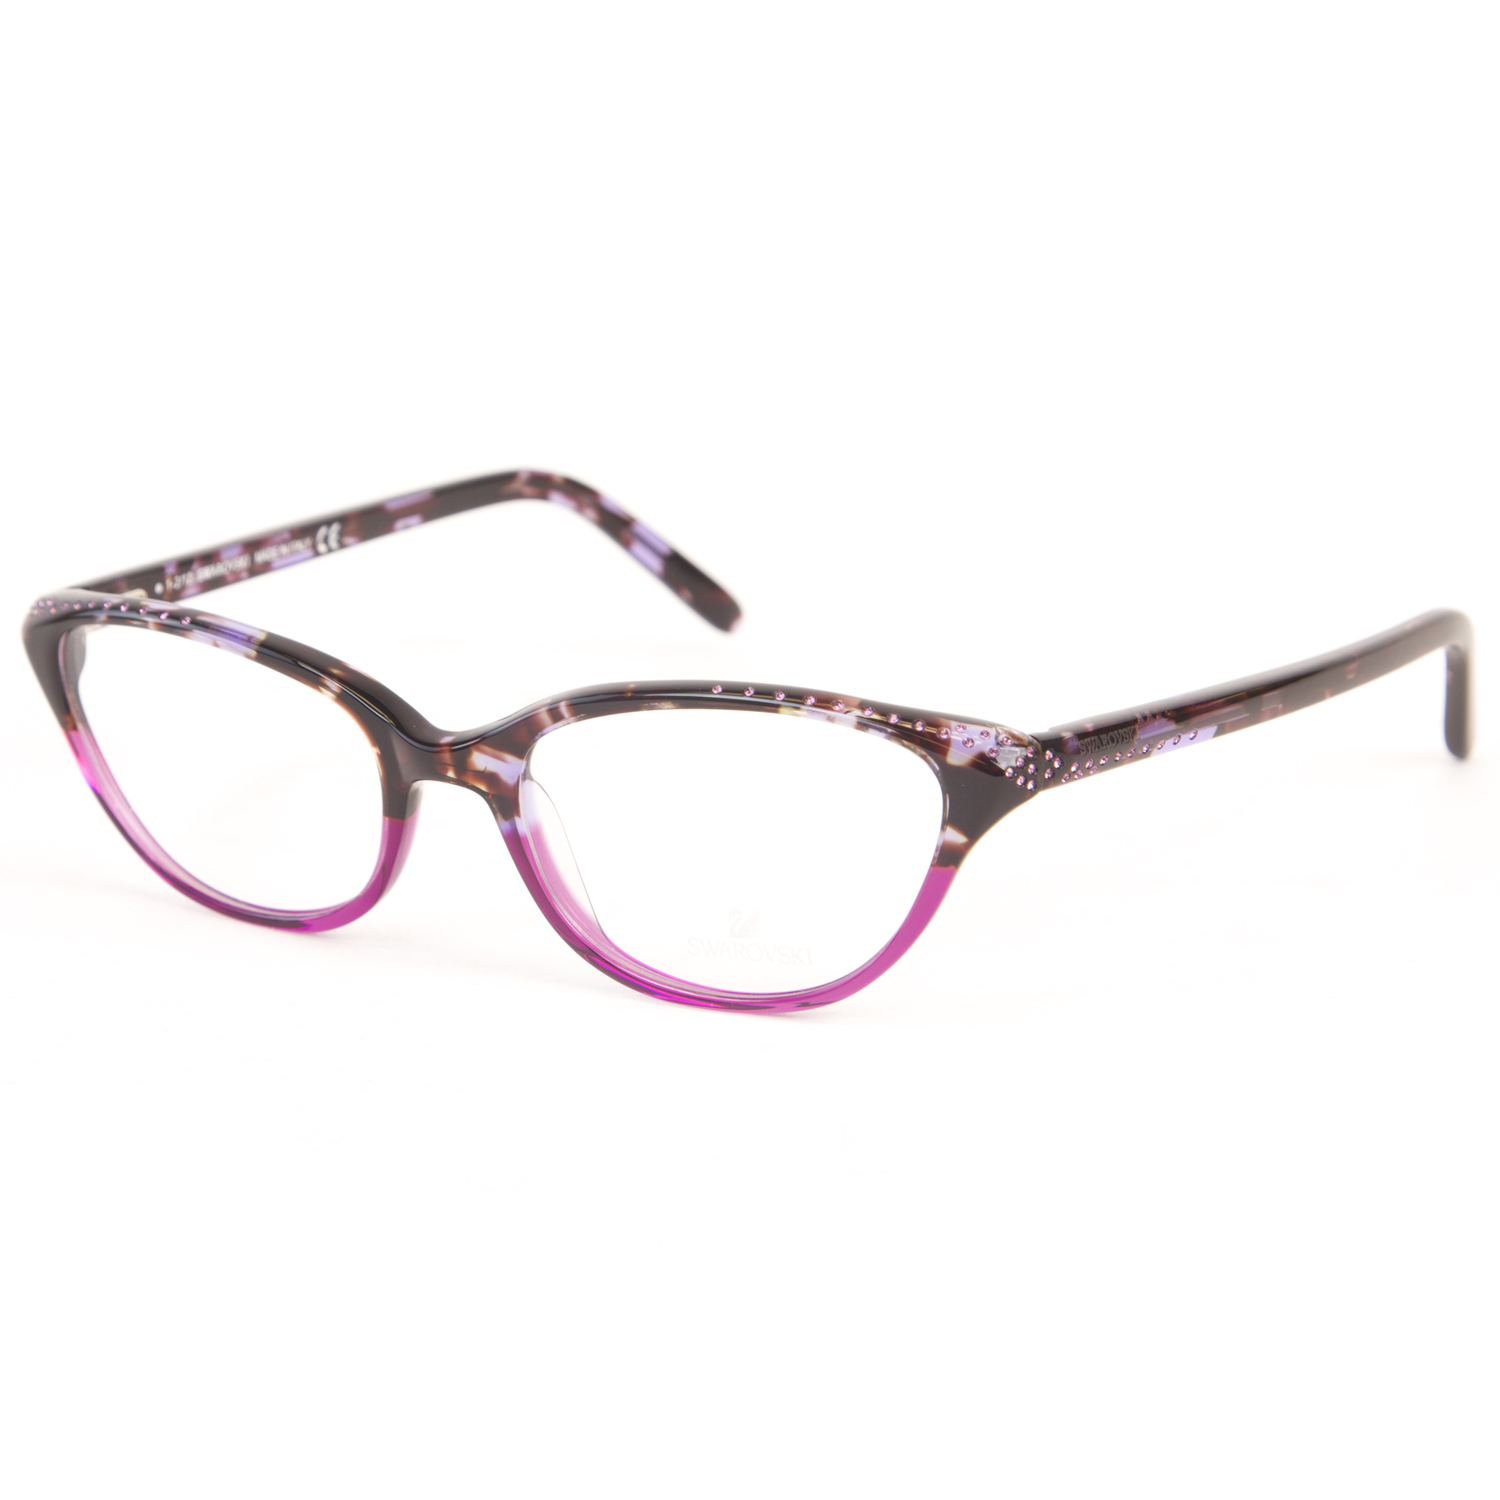 swarovski cateye eyeglass frames 5155